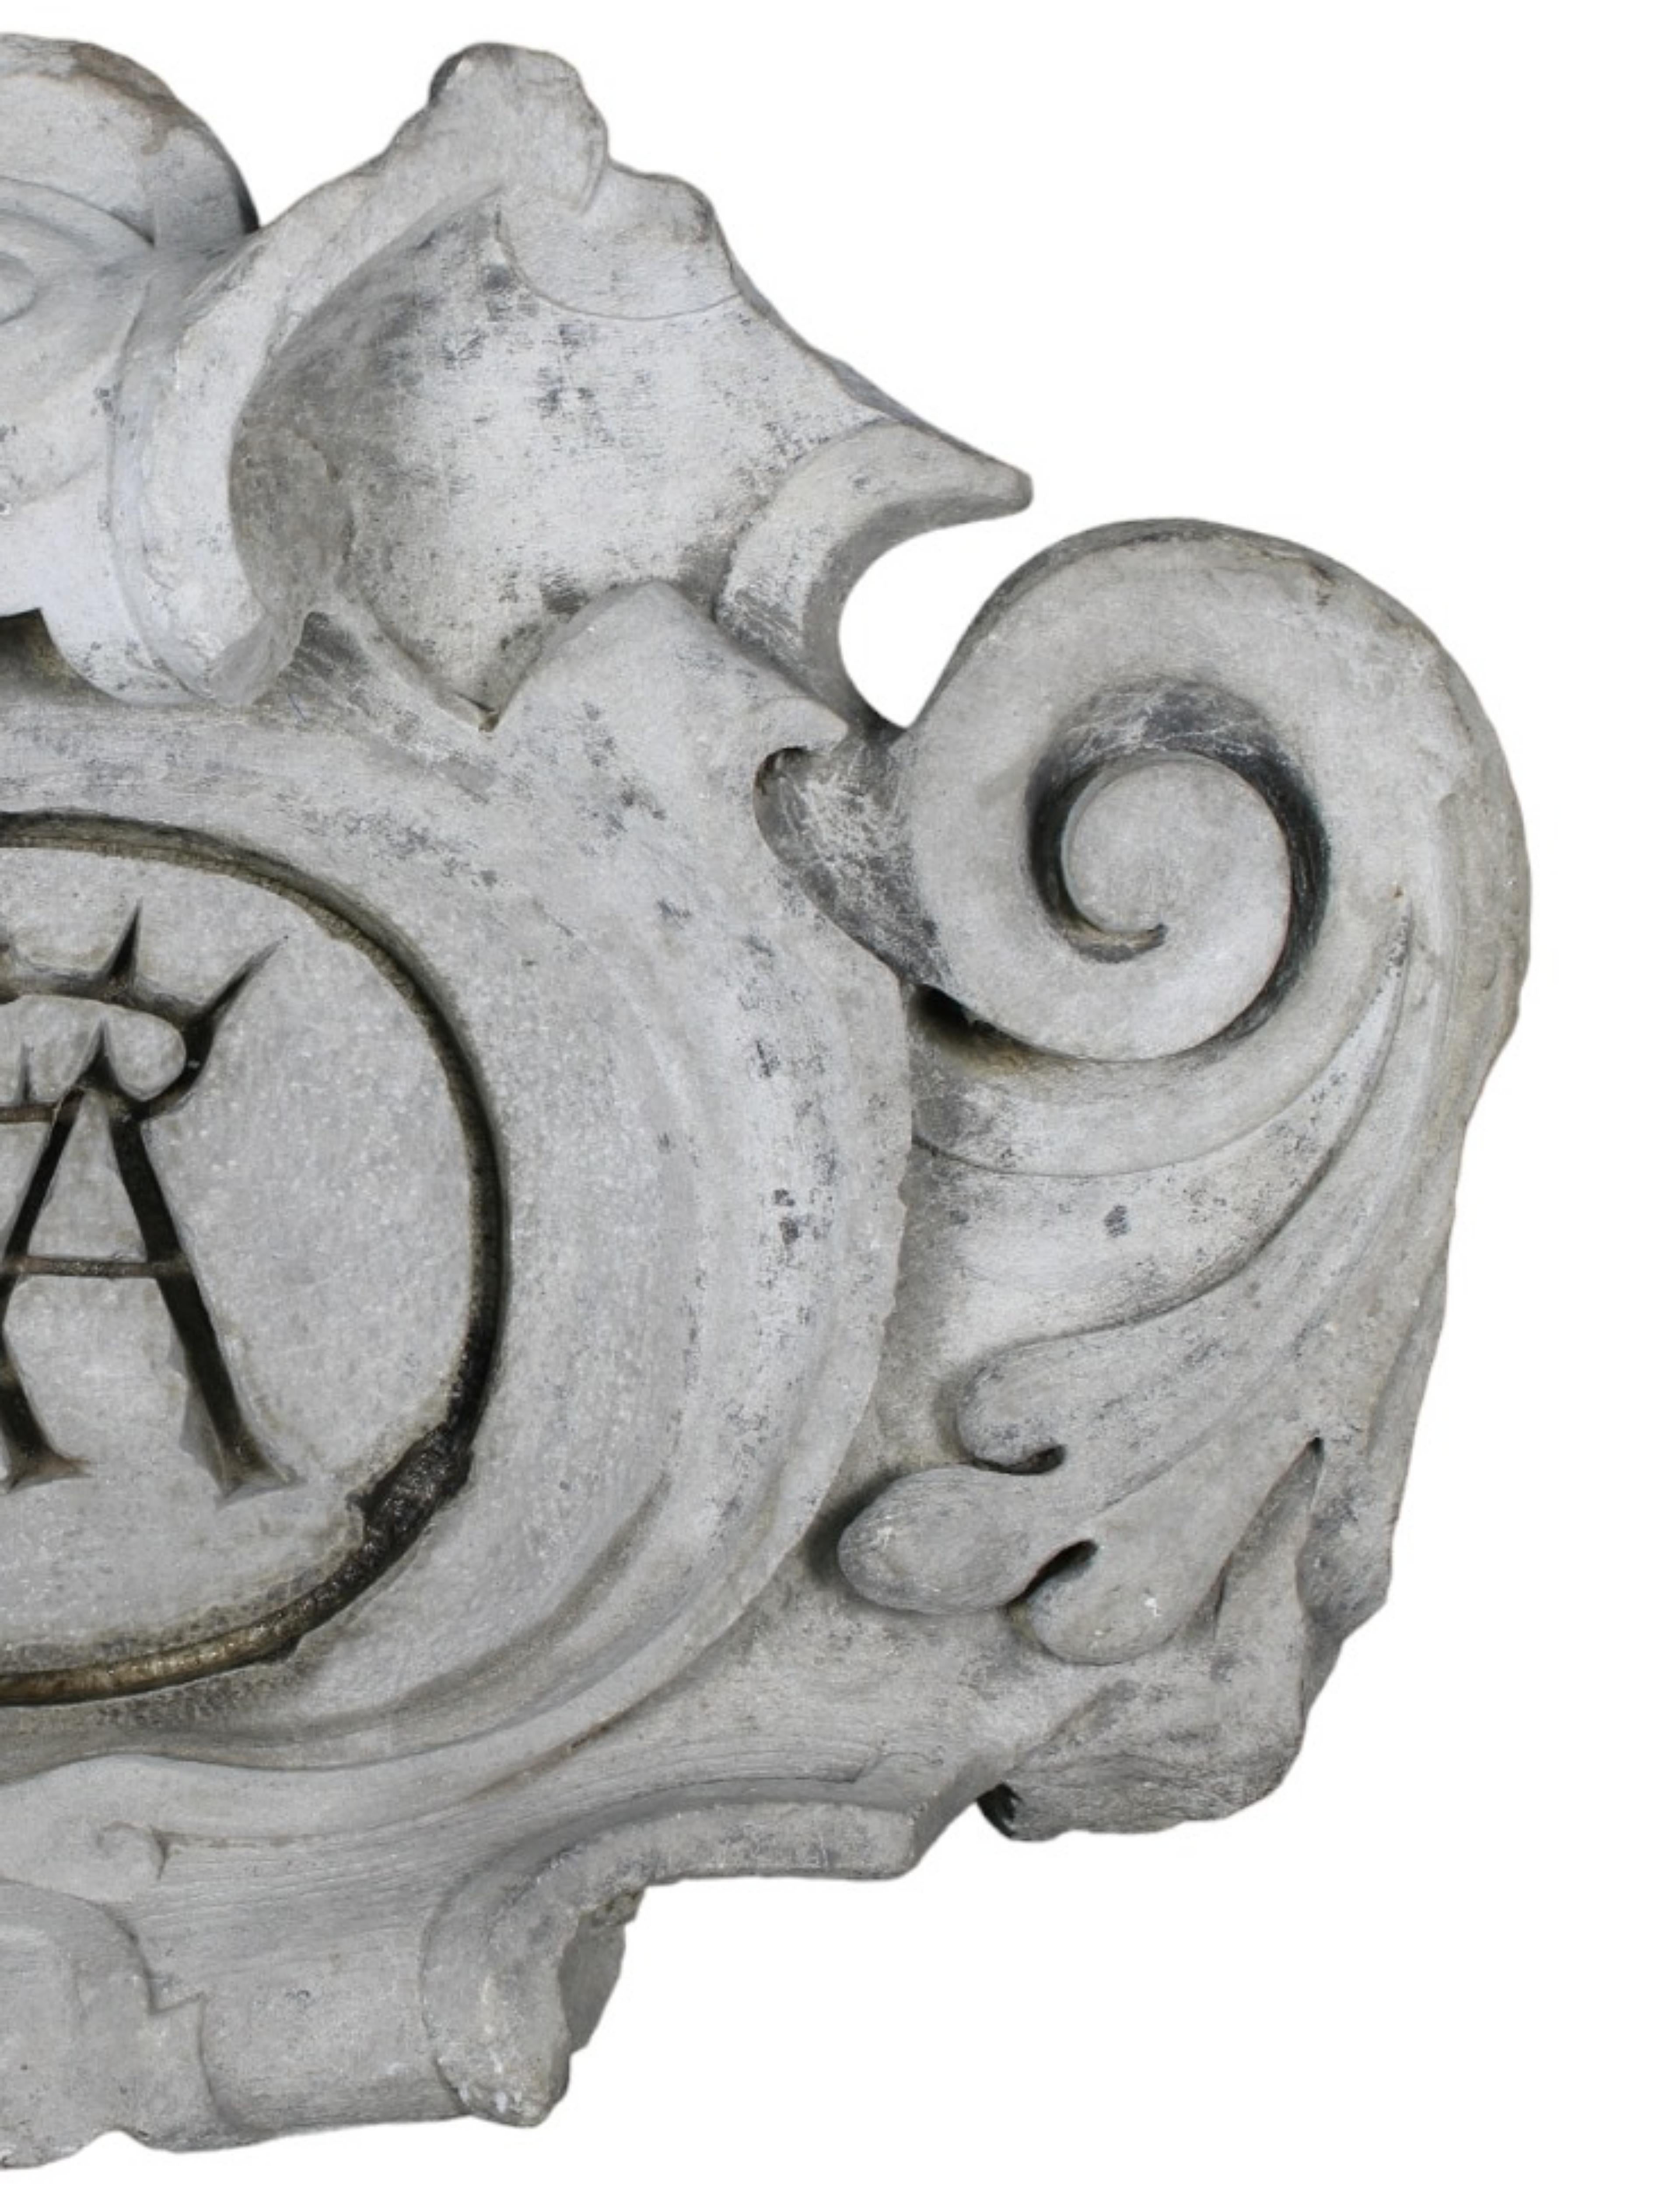 Manteau d'armoiries en marbre blanc de Carrare, Italie, 17ème siècle
finement sculpté de rocailles à l'intérieur de réserves couronnées d'armoiries héraldiques 
Italie 17e siècle
h 80 x 55 x 20 cm
quelques défauts d'âge